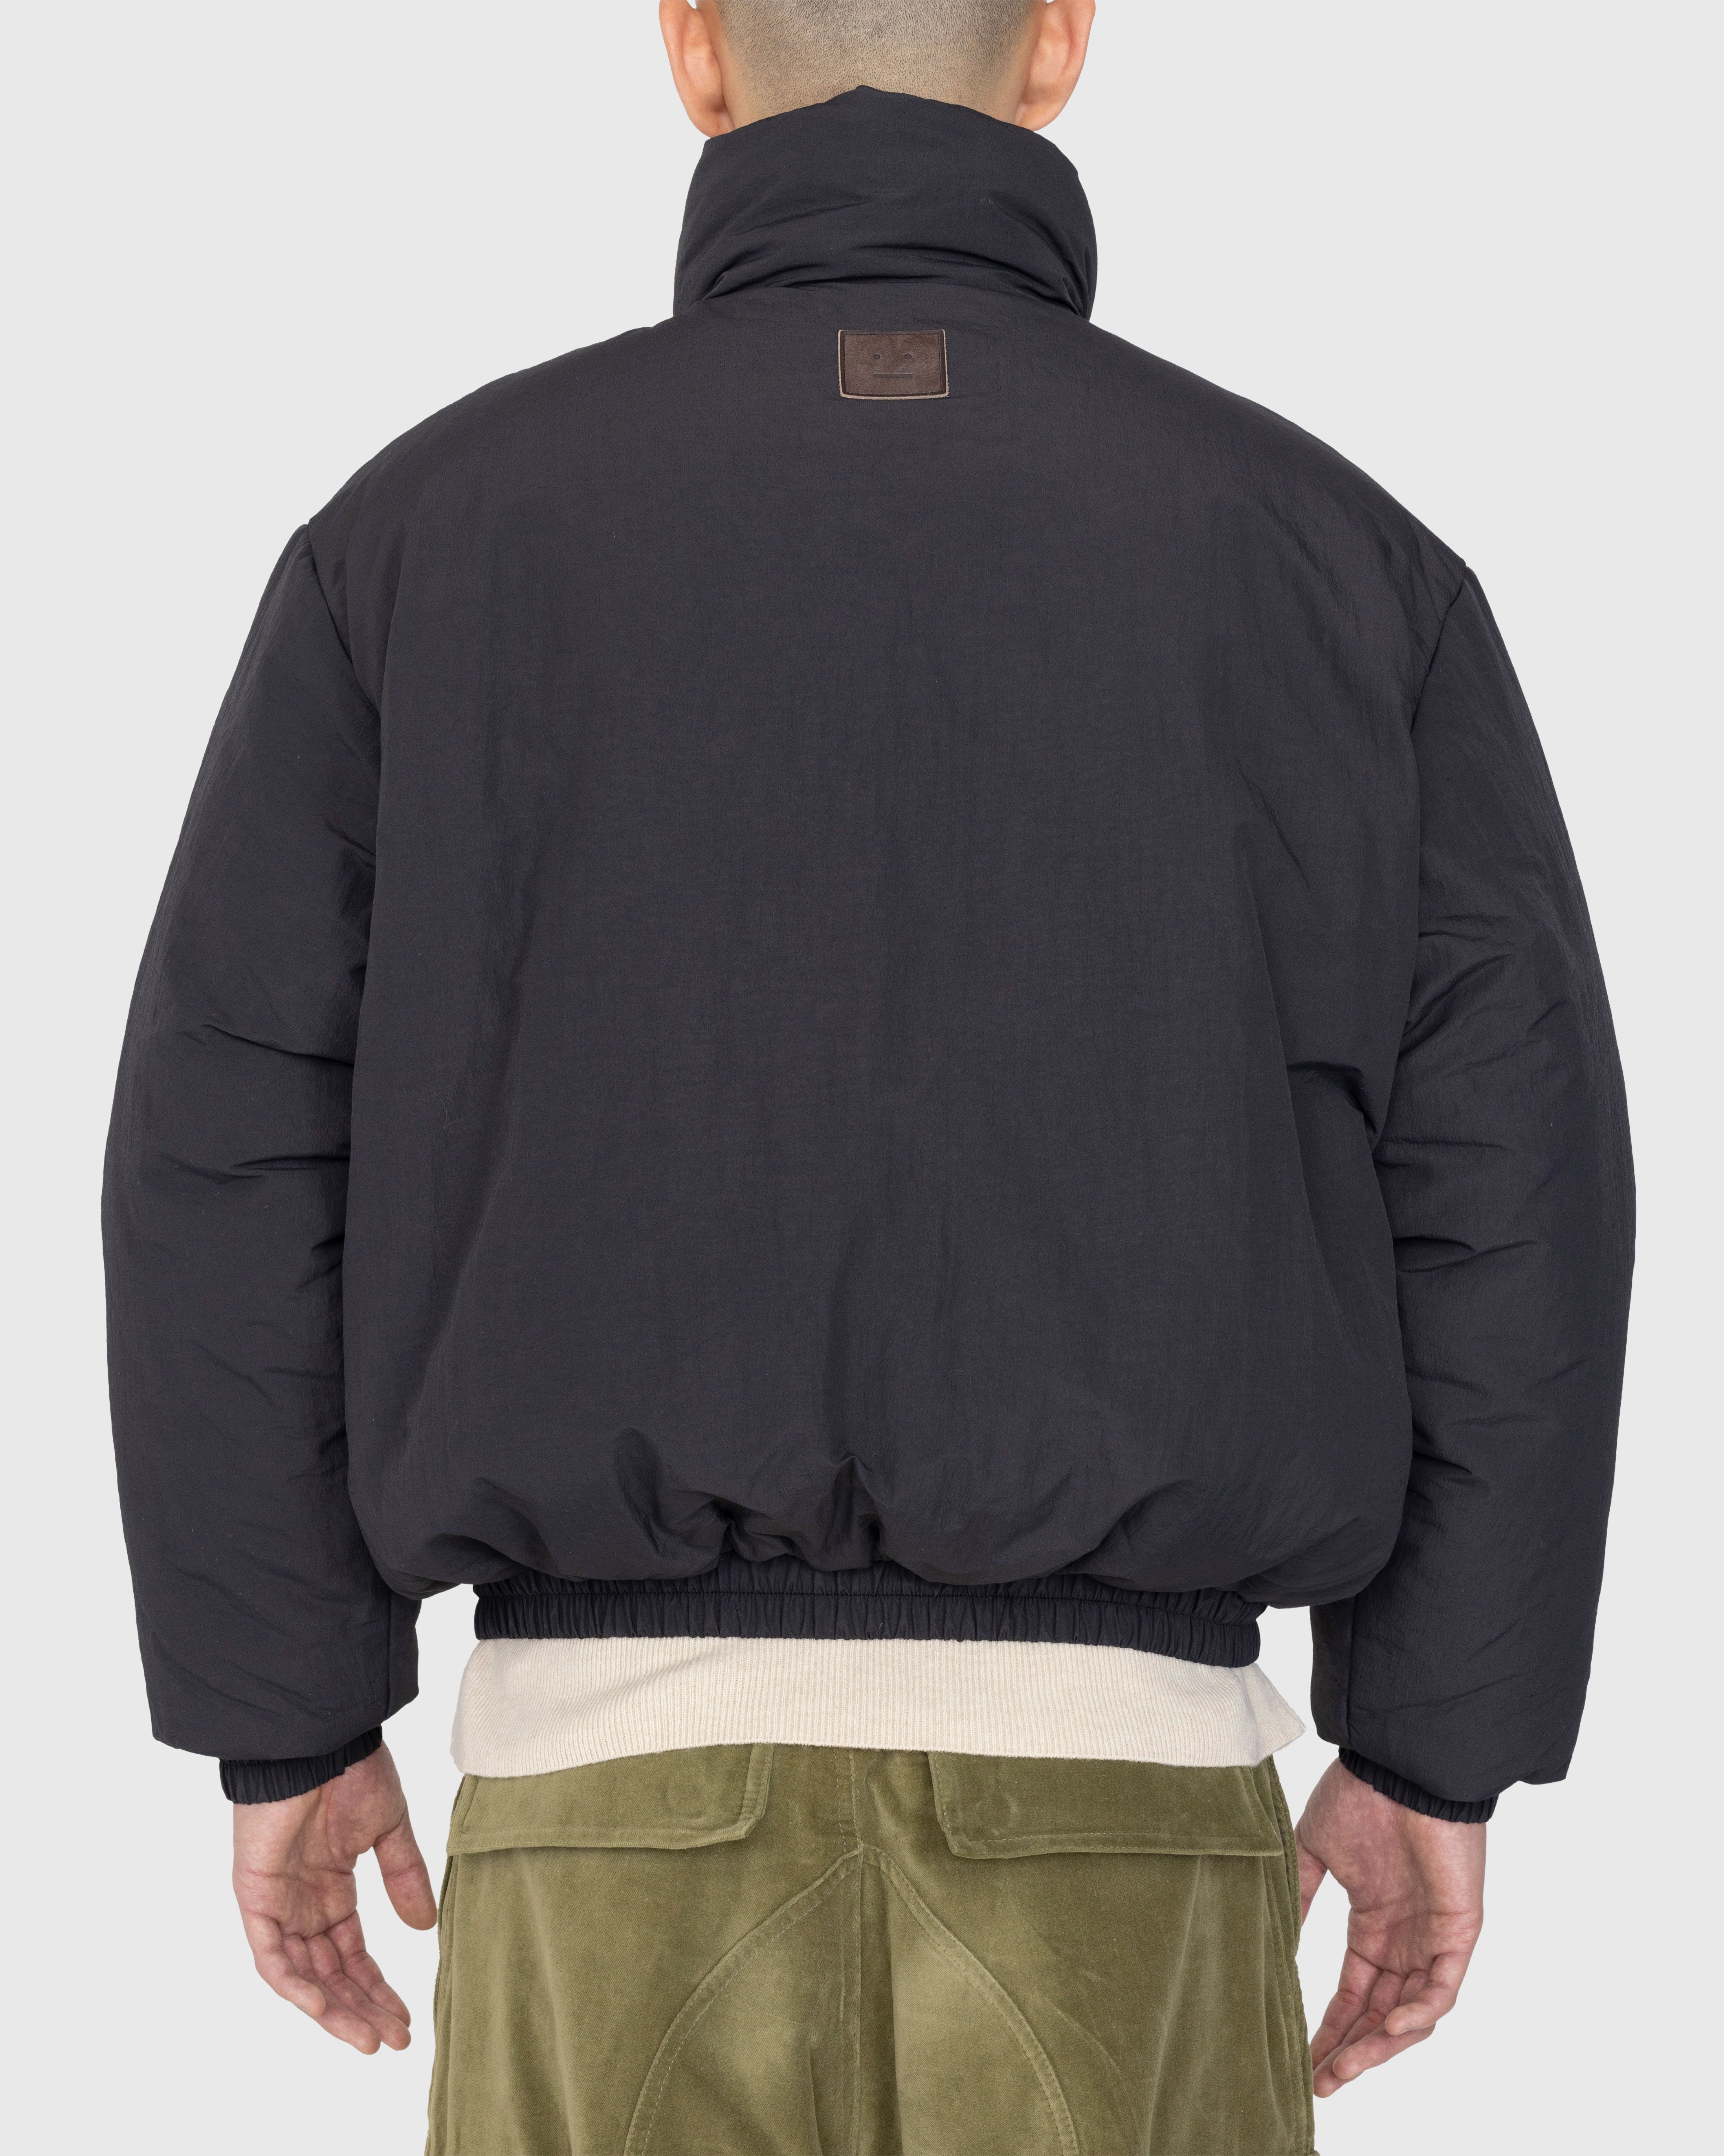 Acne Studios - Padded Nylon Jacket Black - Clothing - Black - Image 5